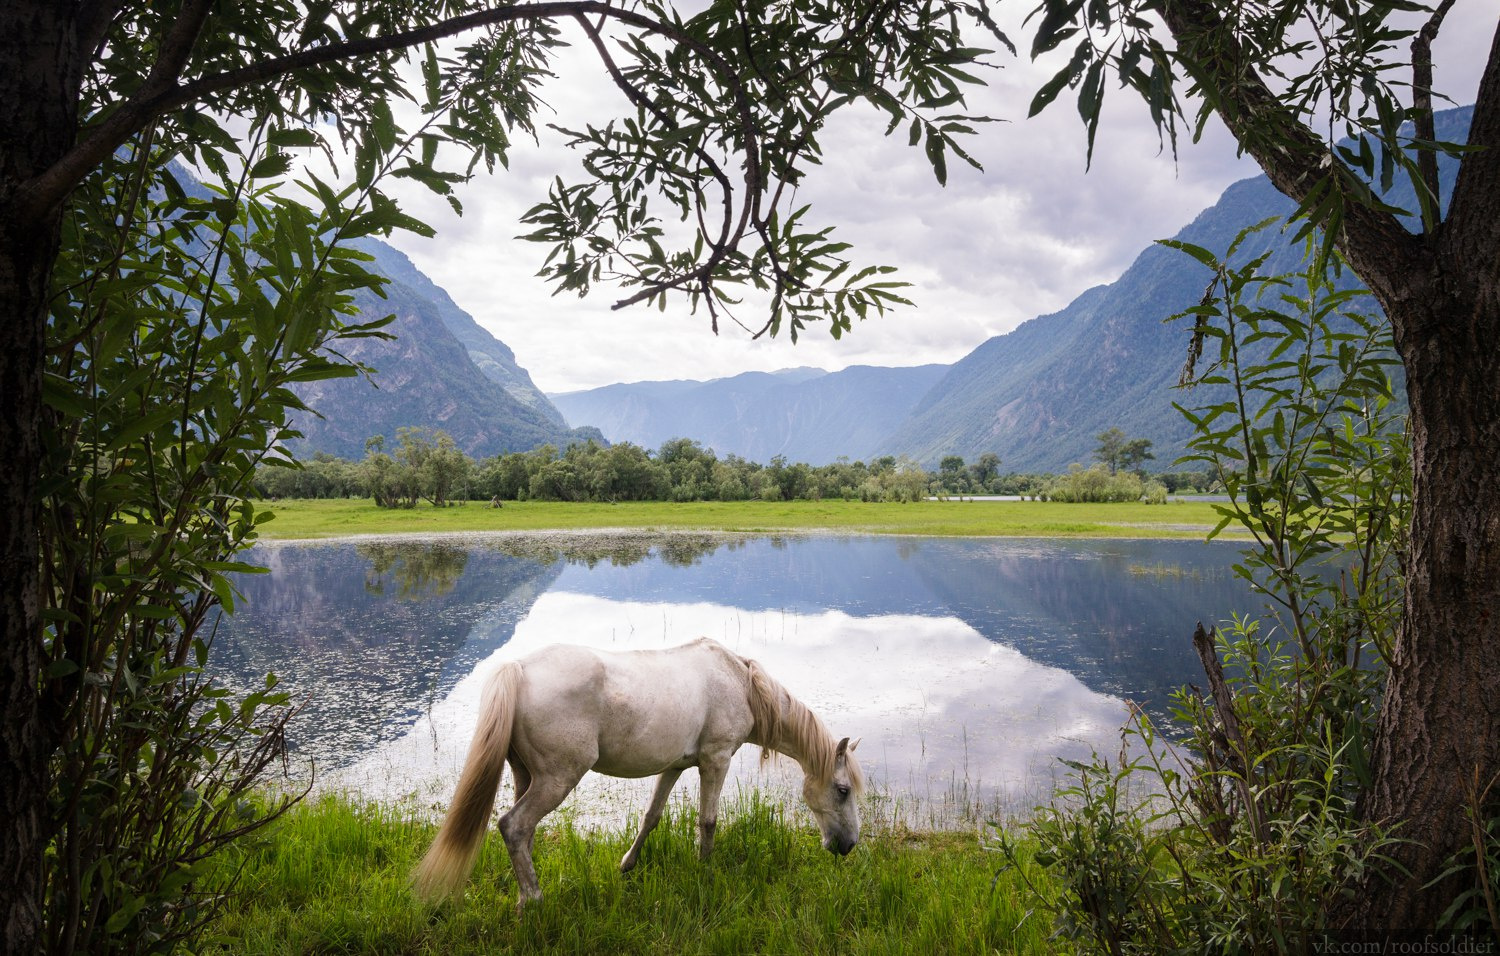 Алтай Алтай пейзаж Россия природа скала горы лошадь животное озеро отражение лес